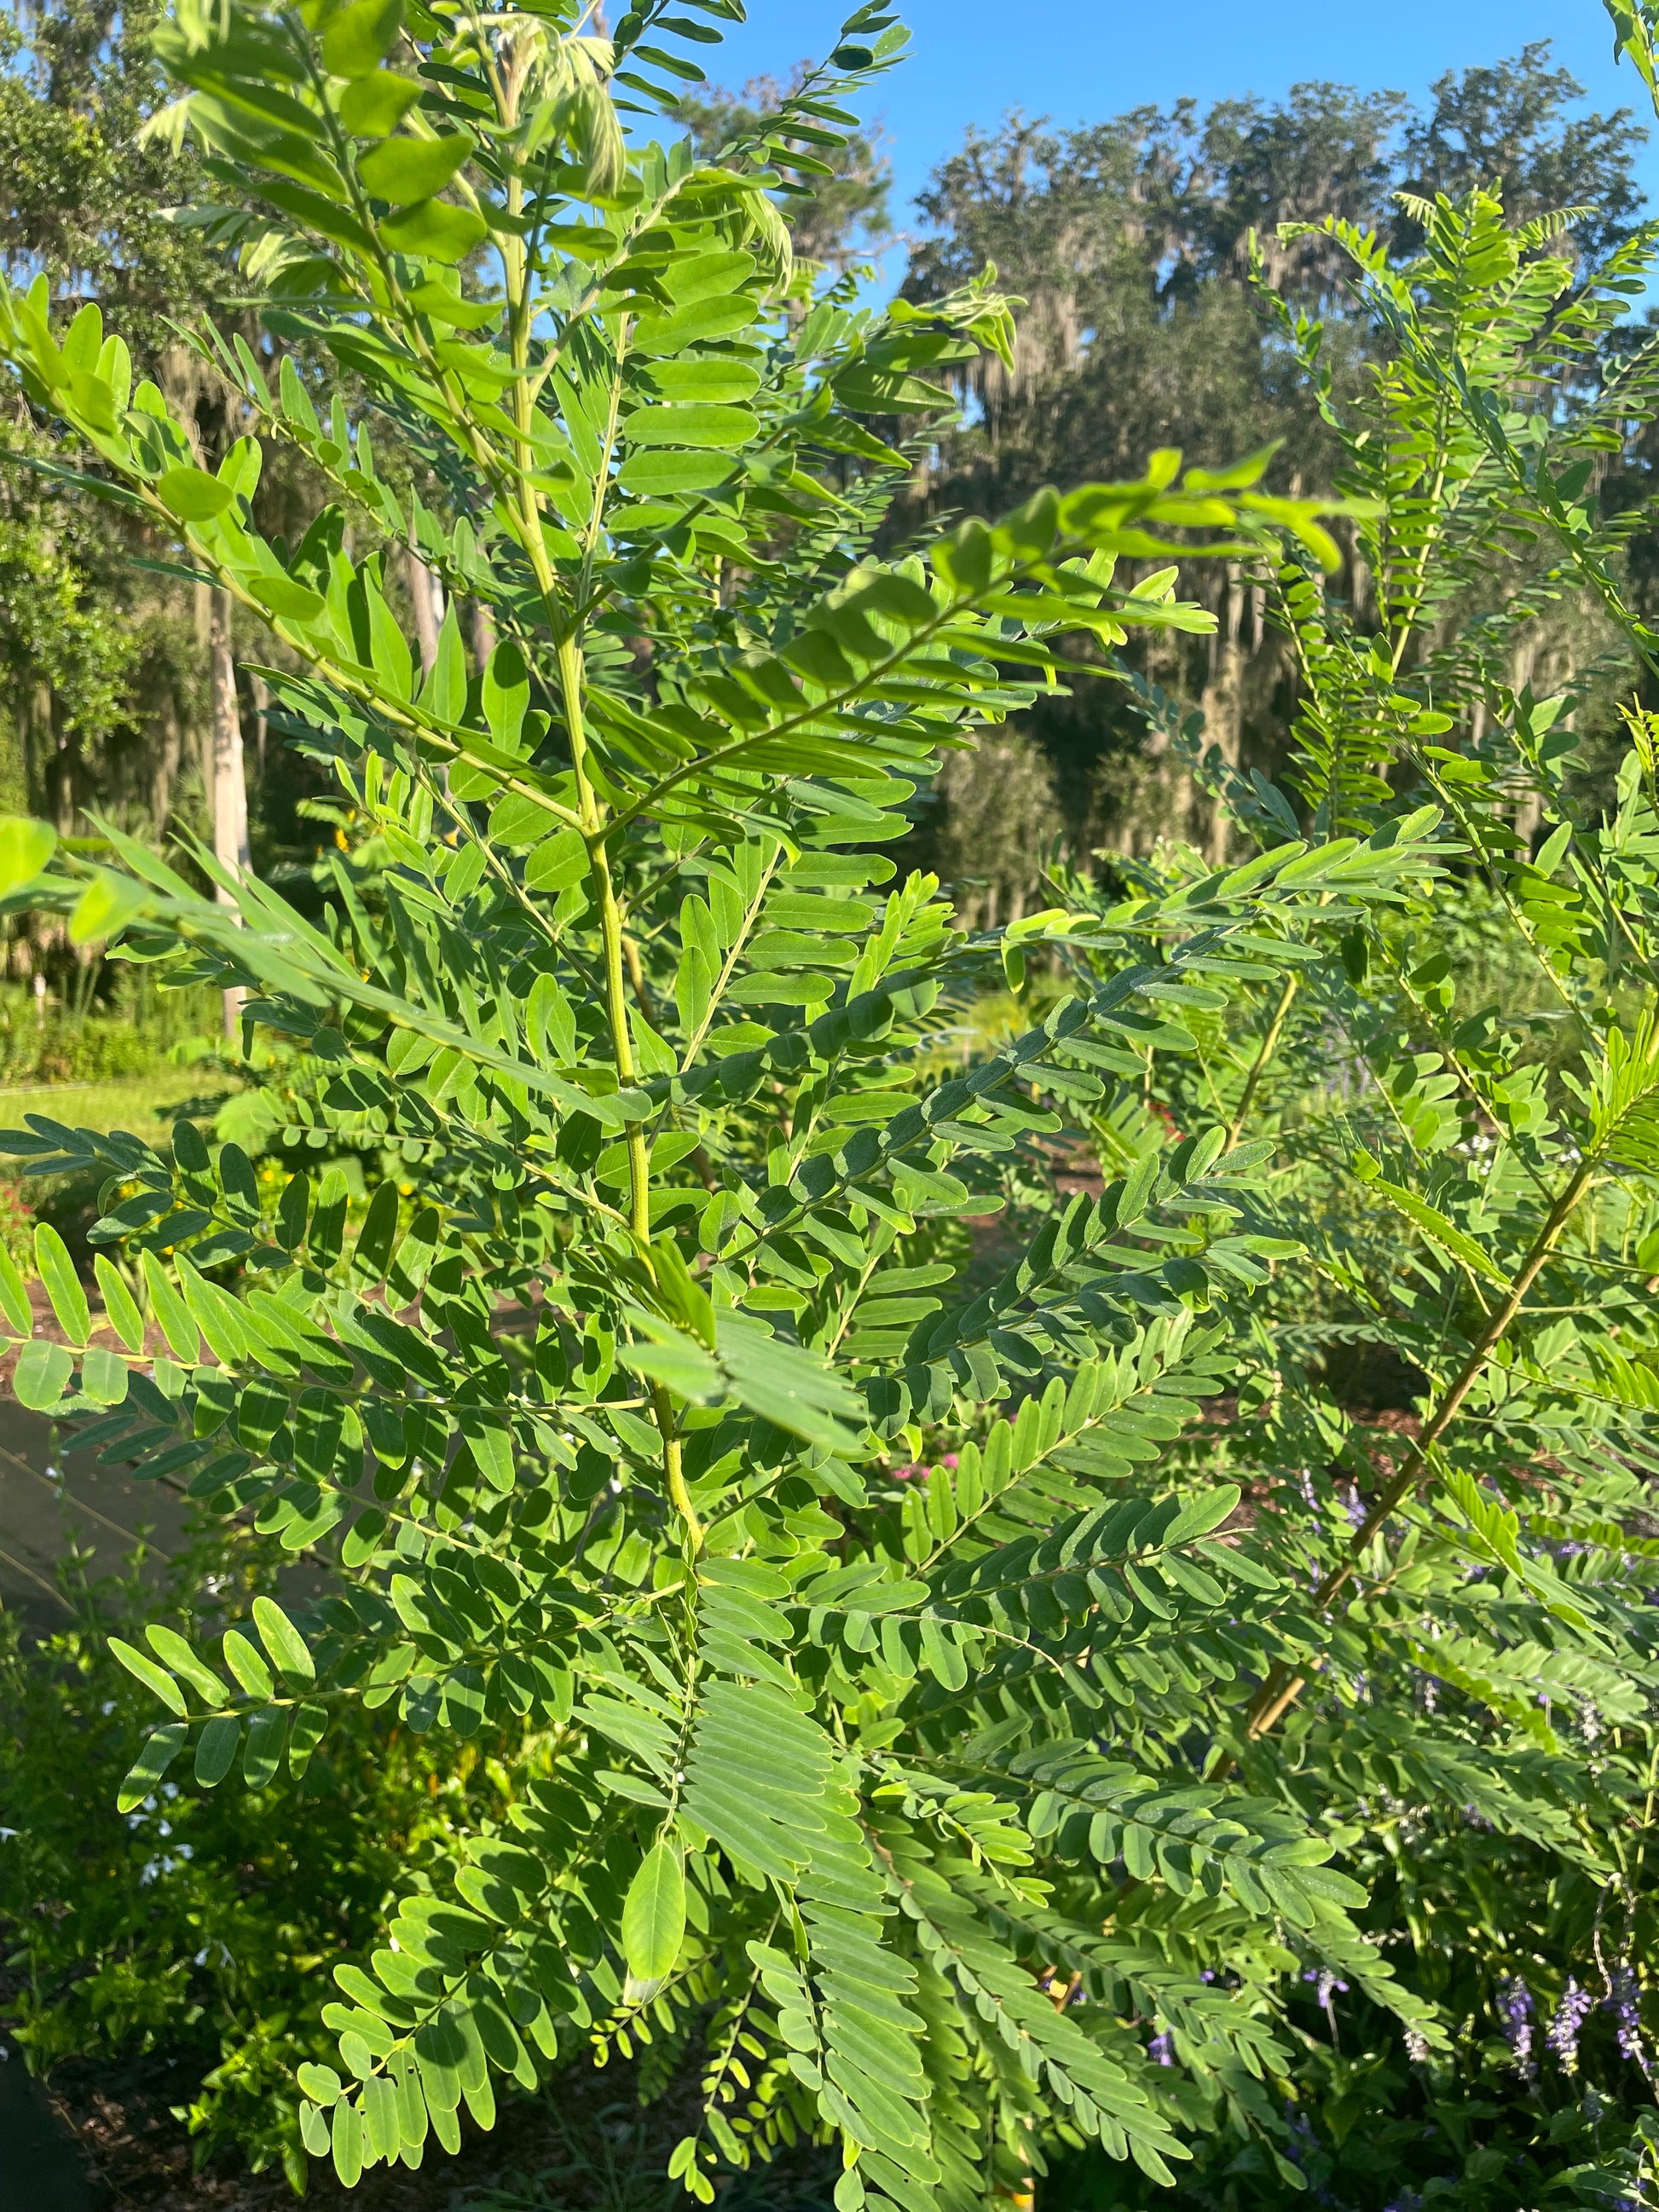 Amorpha Fruticosa " False Indigo"